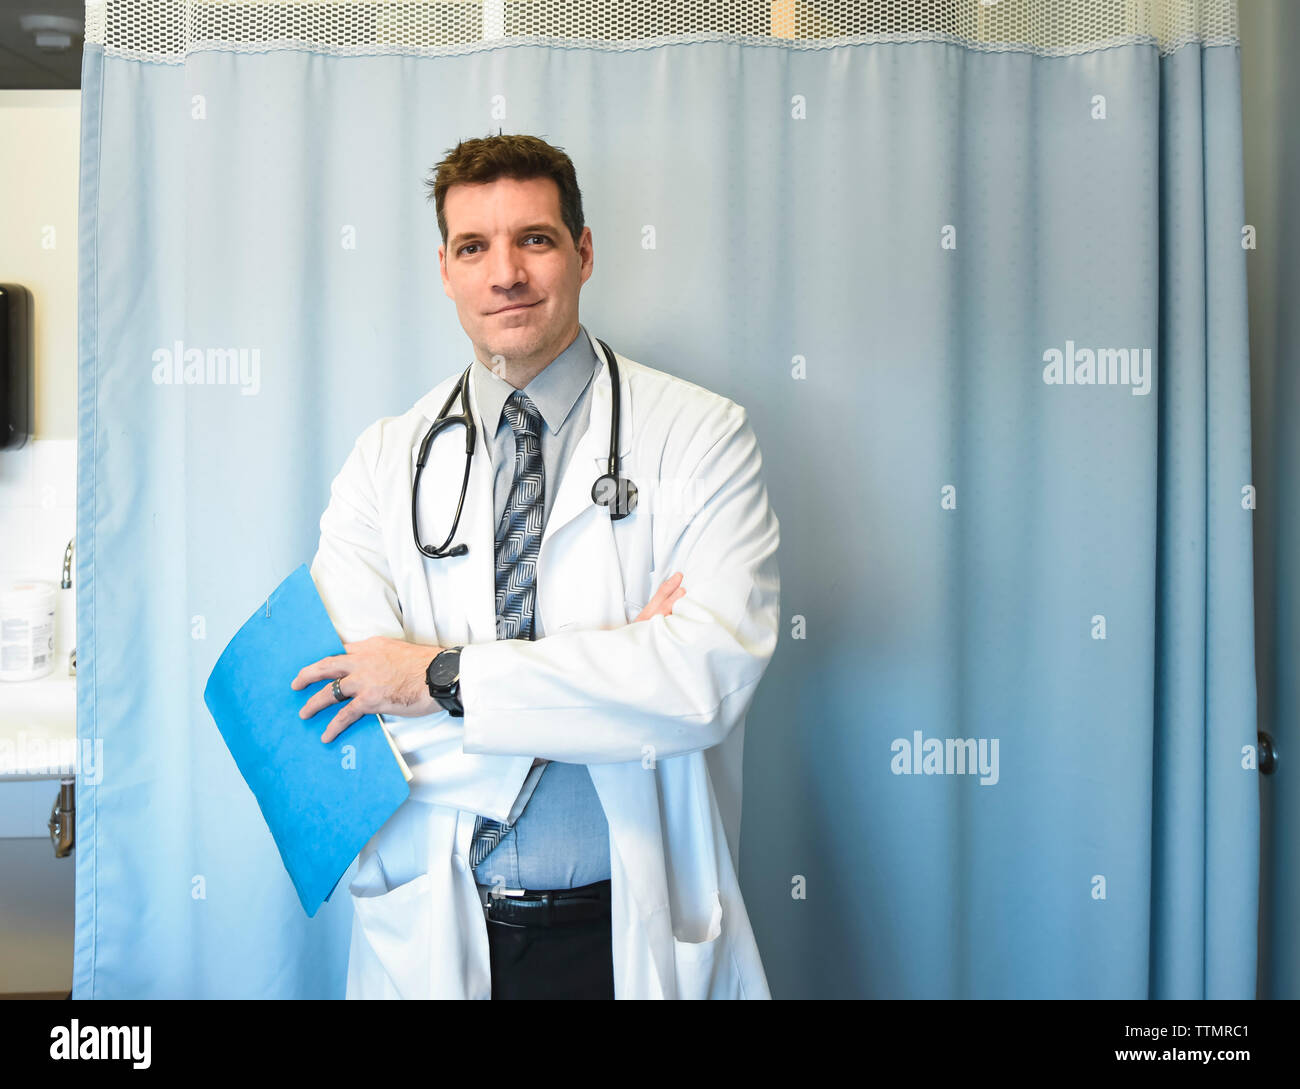 Arzt im weißen Kittel vor Krankenhaus Zimmer Vorhang. Stockfoto